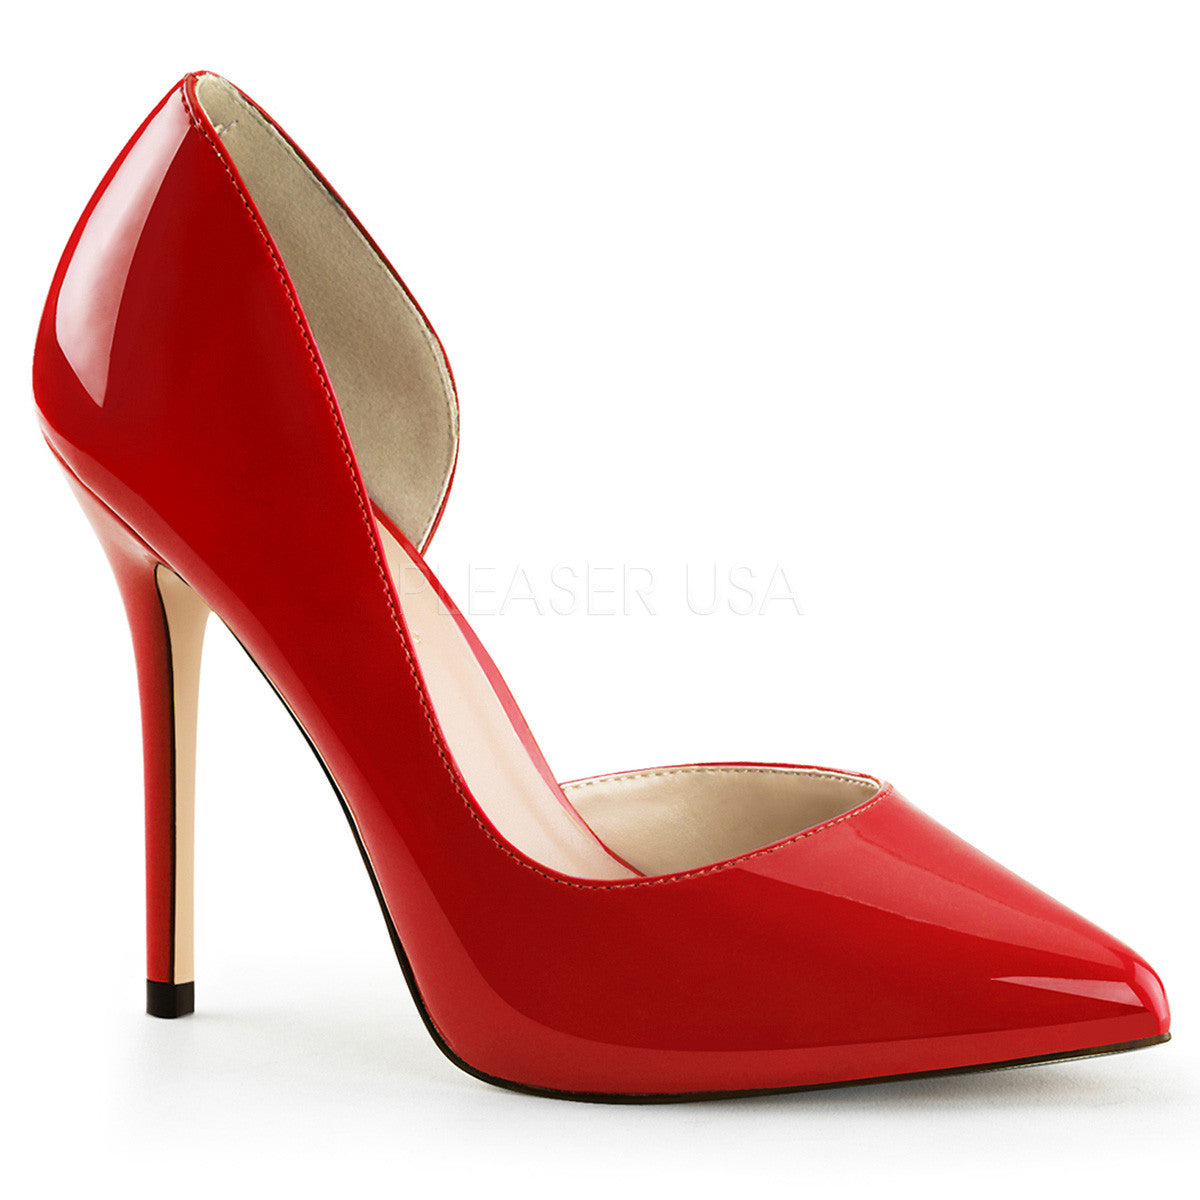 Pleaser AMUSE-22 Red Patent D'Orsay Pumps - Shoecup.com - 1